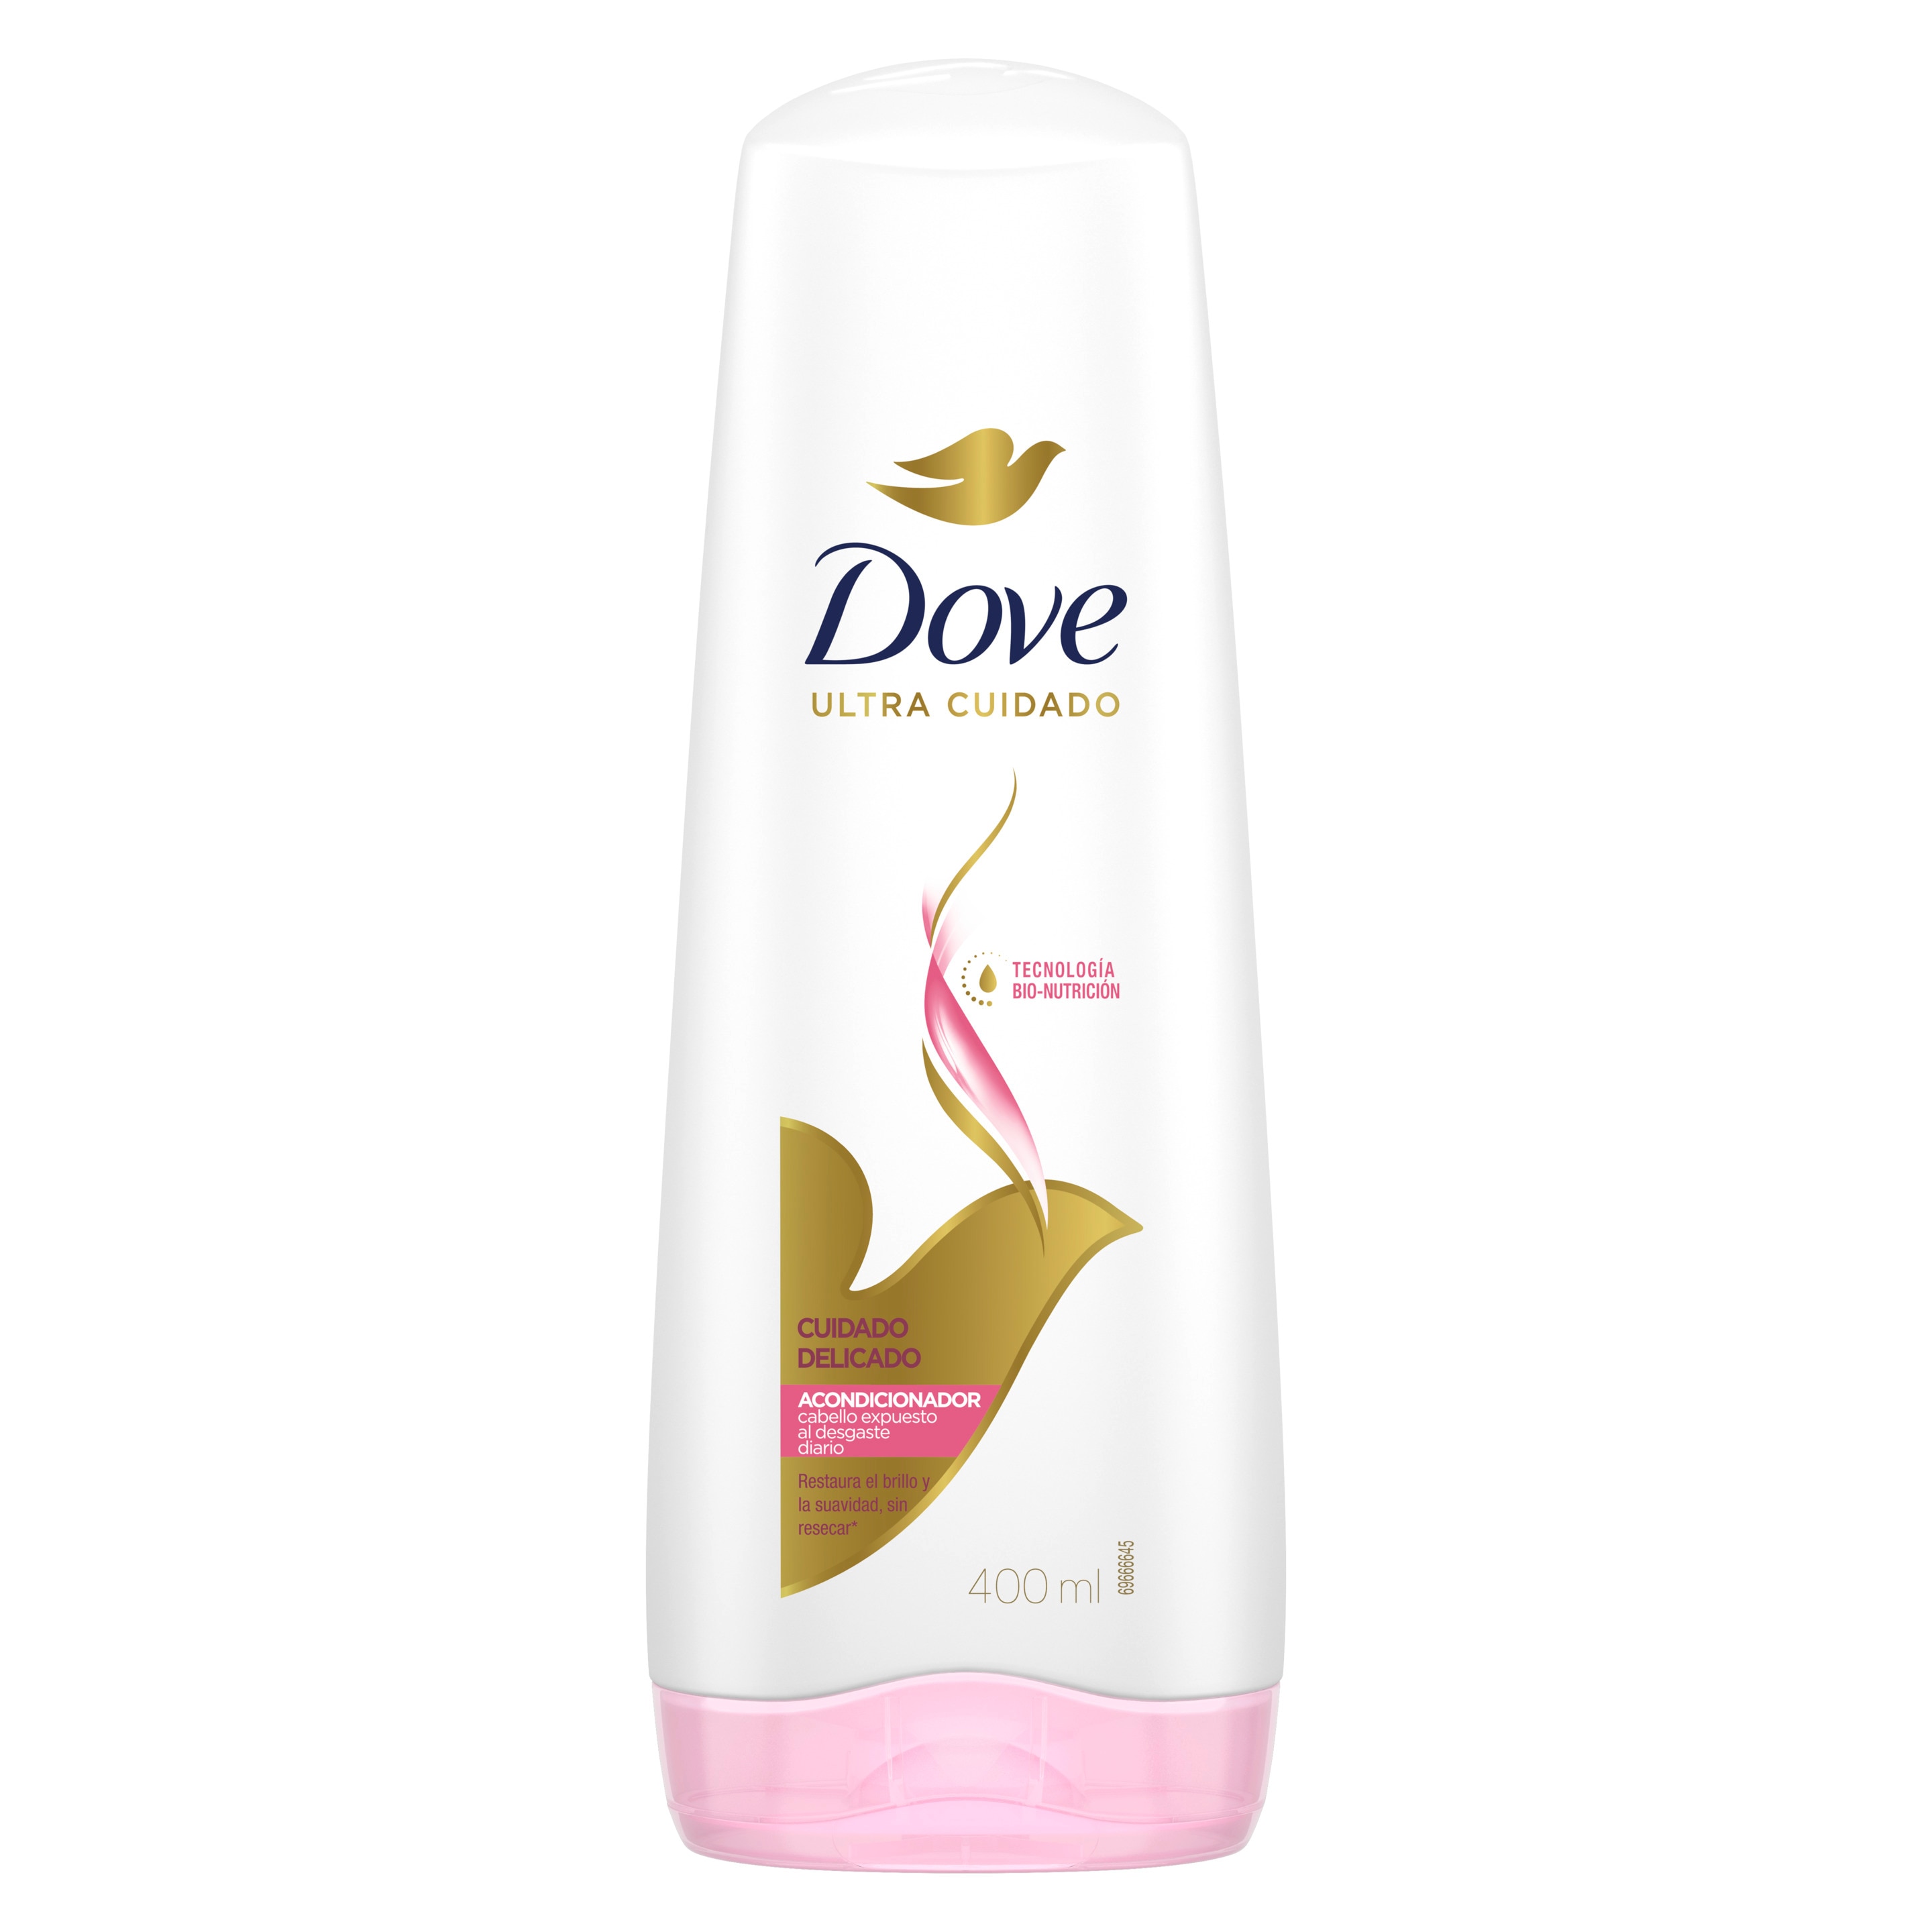 Envase de Dove Acondicionador Cuidado Delicado. Brillo y suavidad sin resecar tu pelo